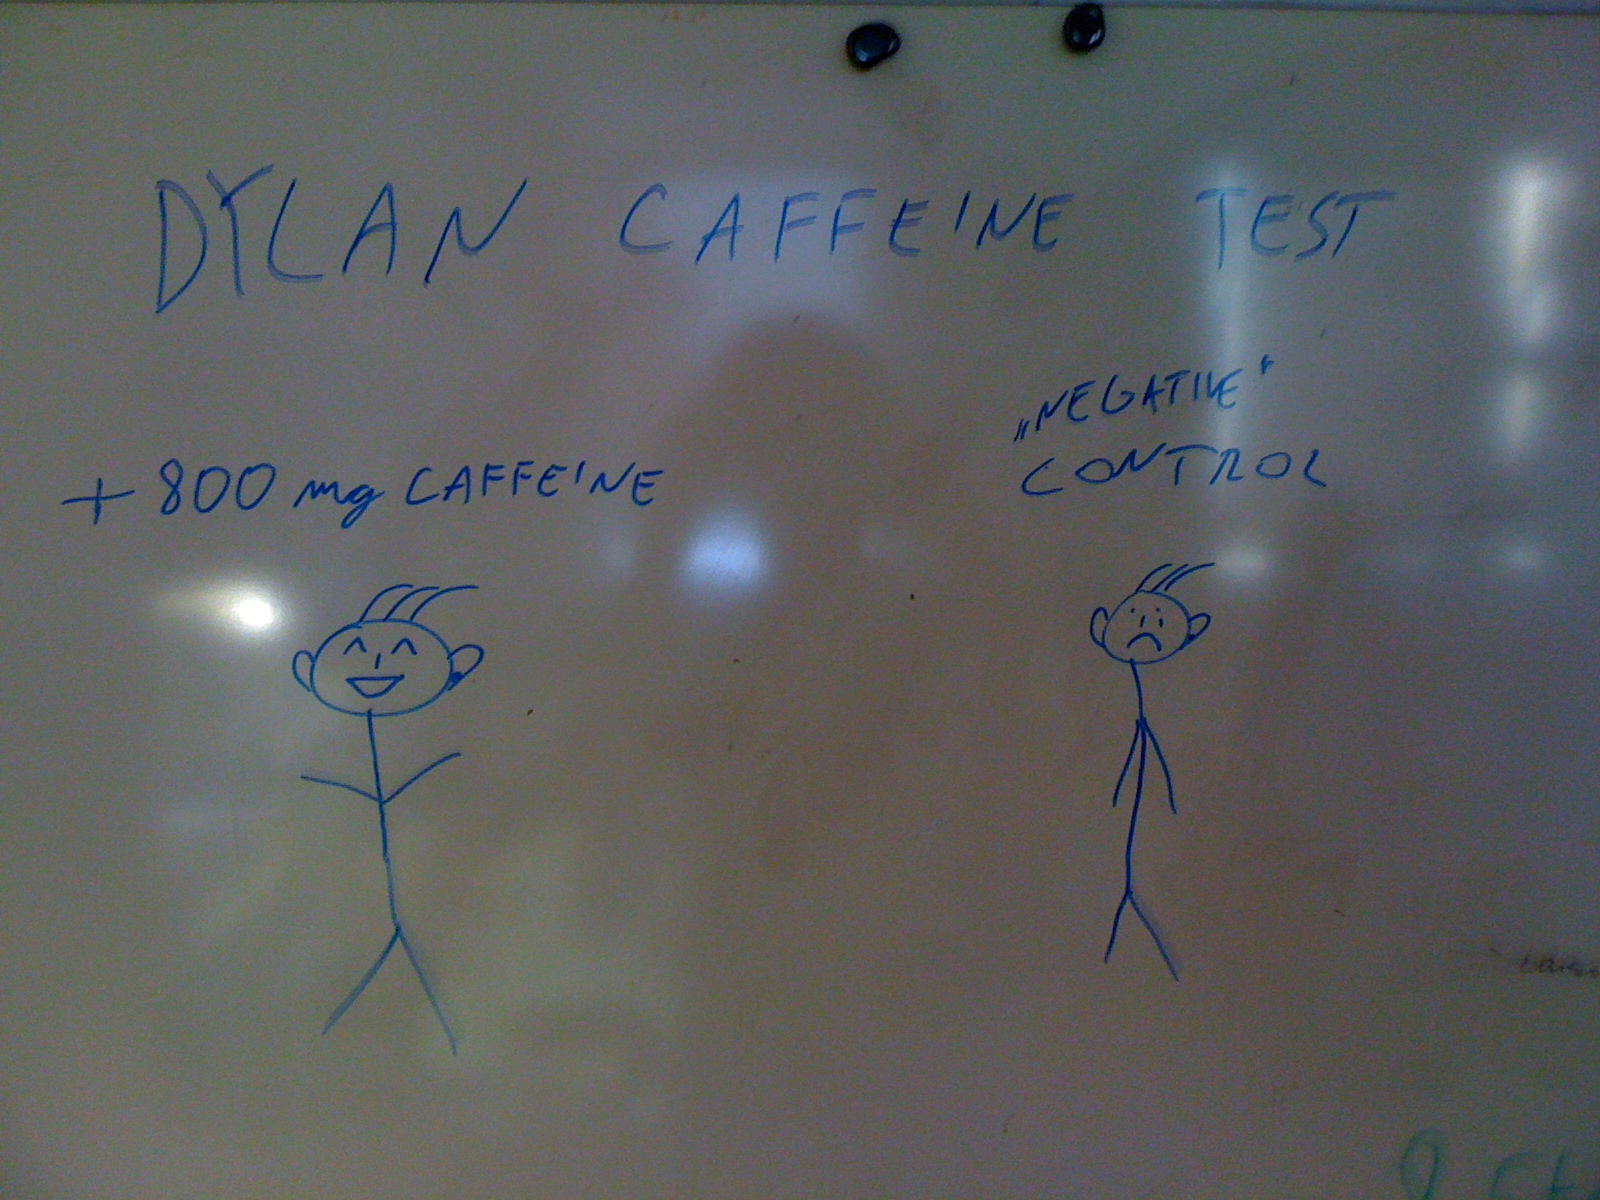 Caffeine test.jpg